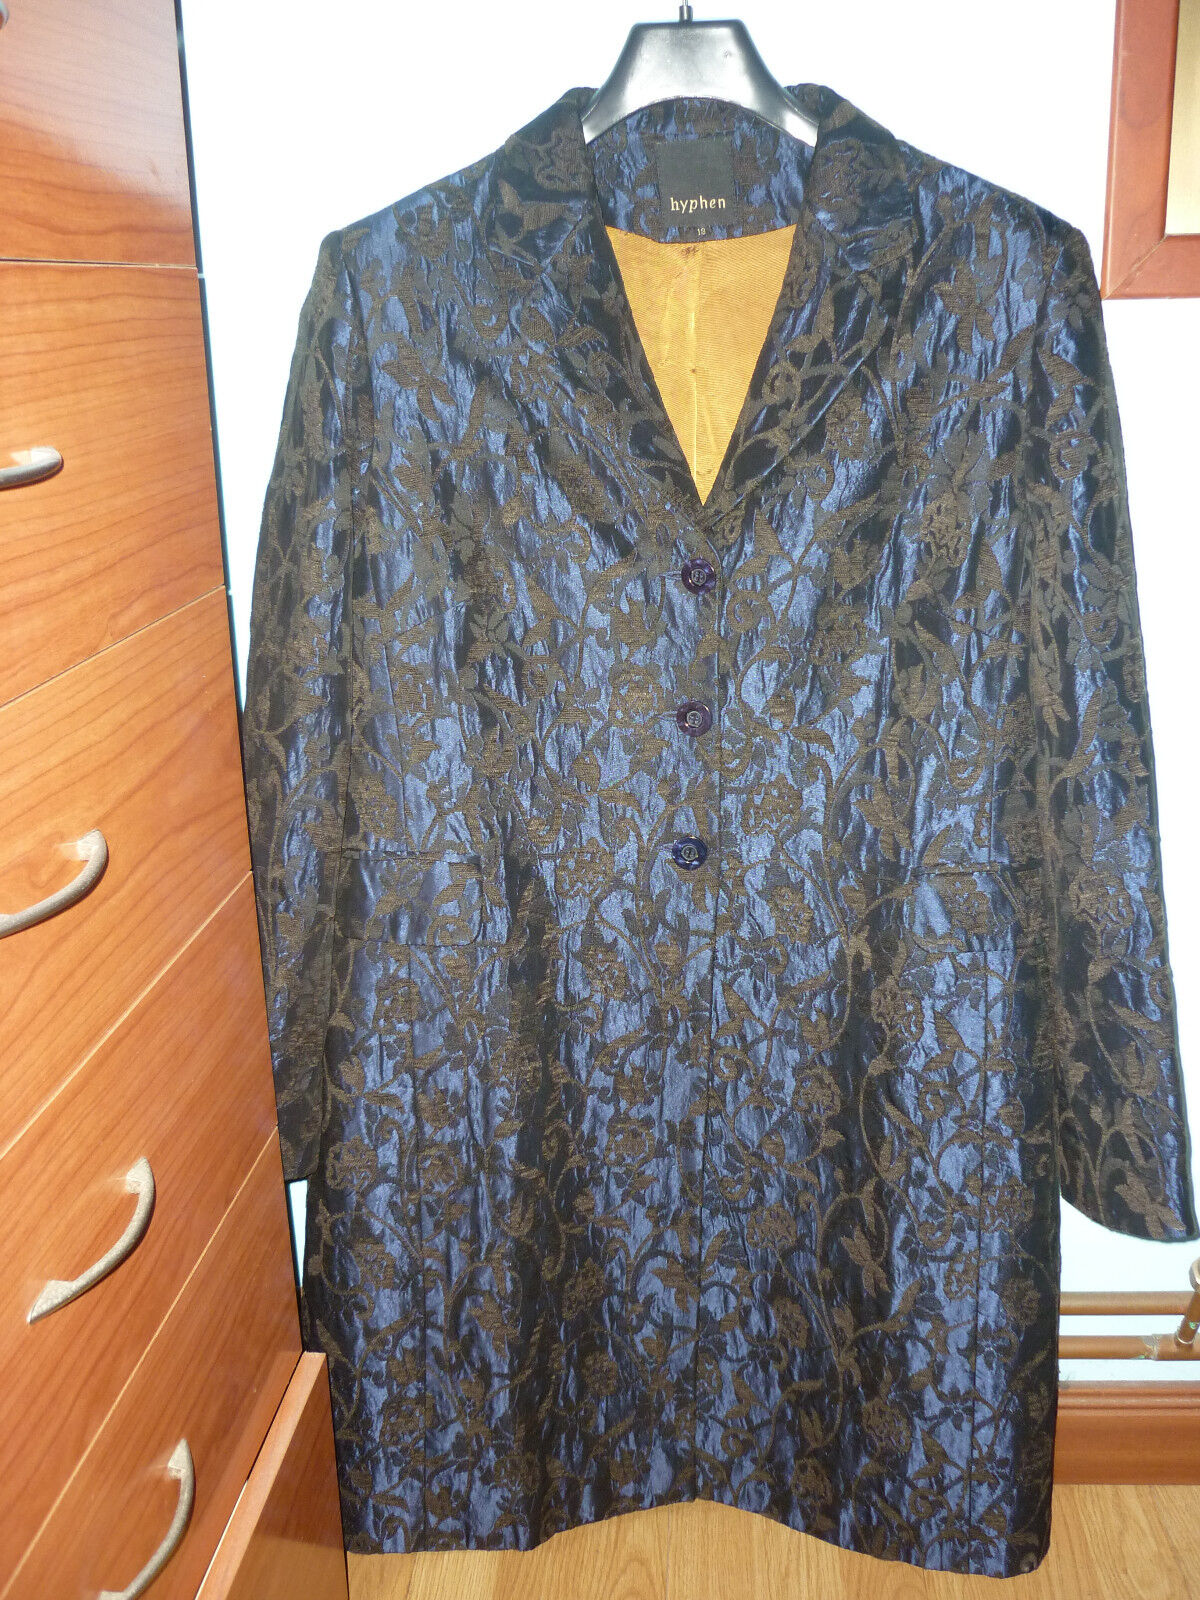 REBAJAS hyphen precioso abrigo azul marrón ocre mujer, talla xl 46 48,coat...